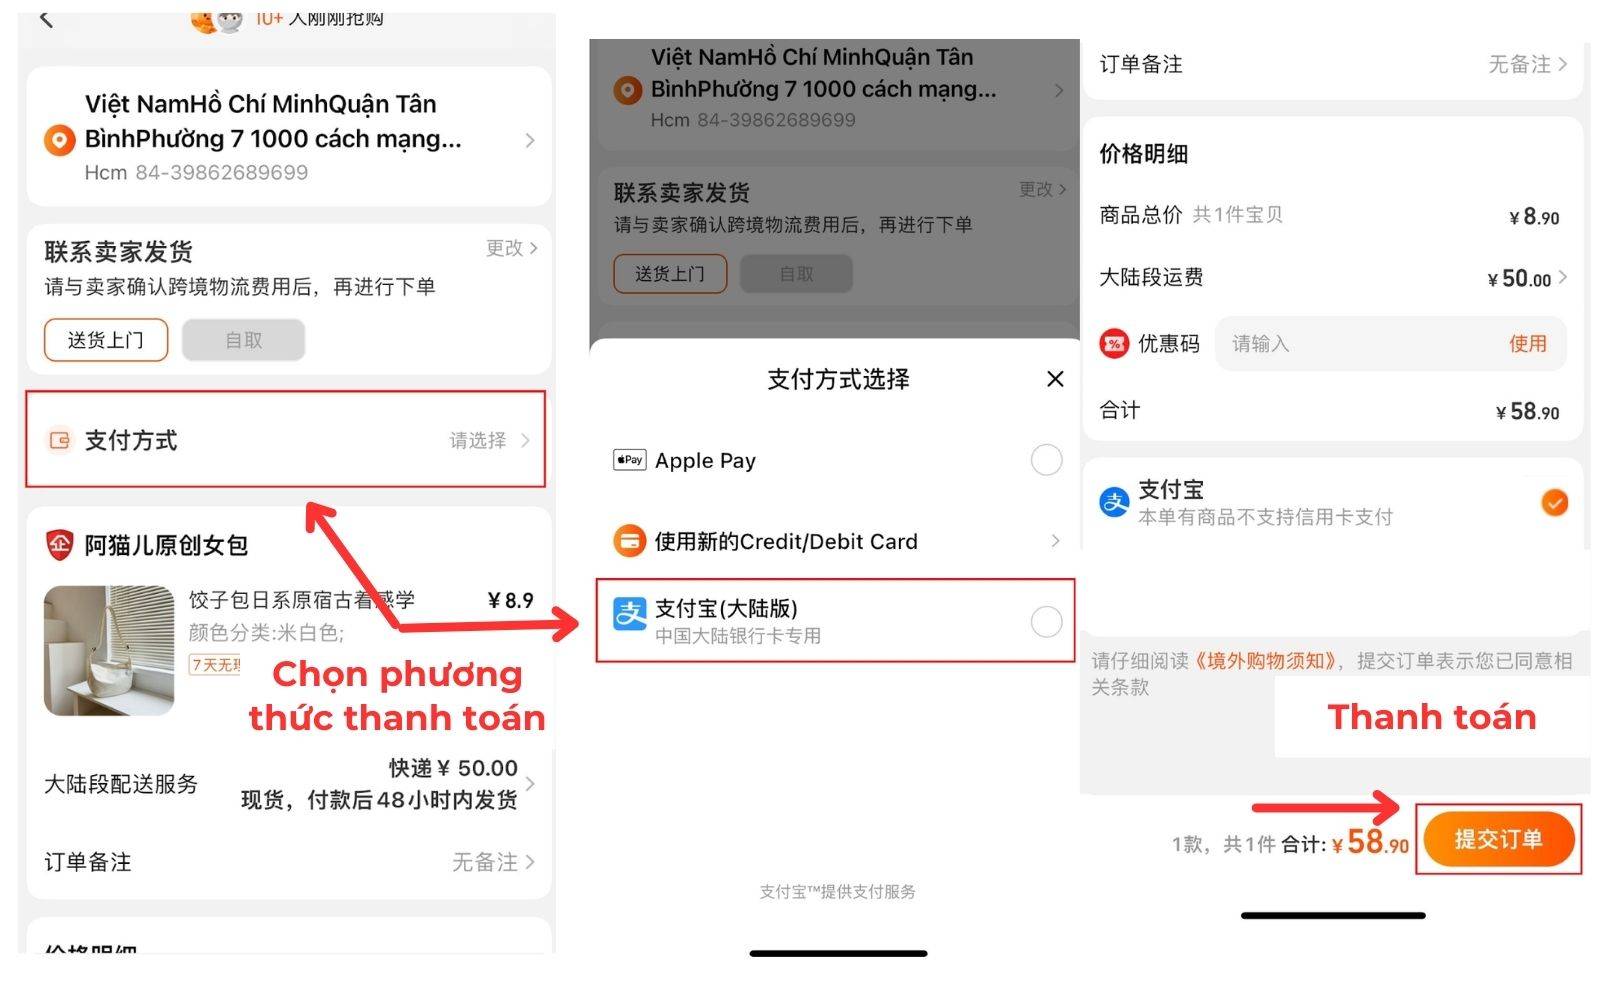 Chọn phương thức thanh toán phù hợp cho đơn hàng đặt trên Taobao.com